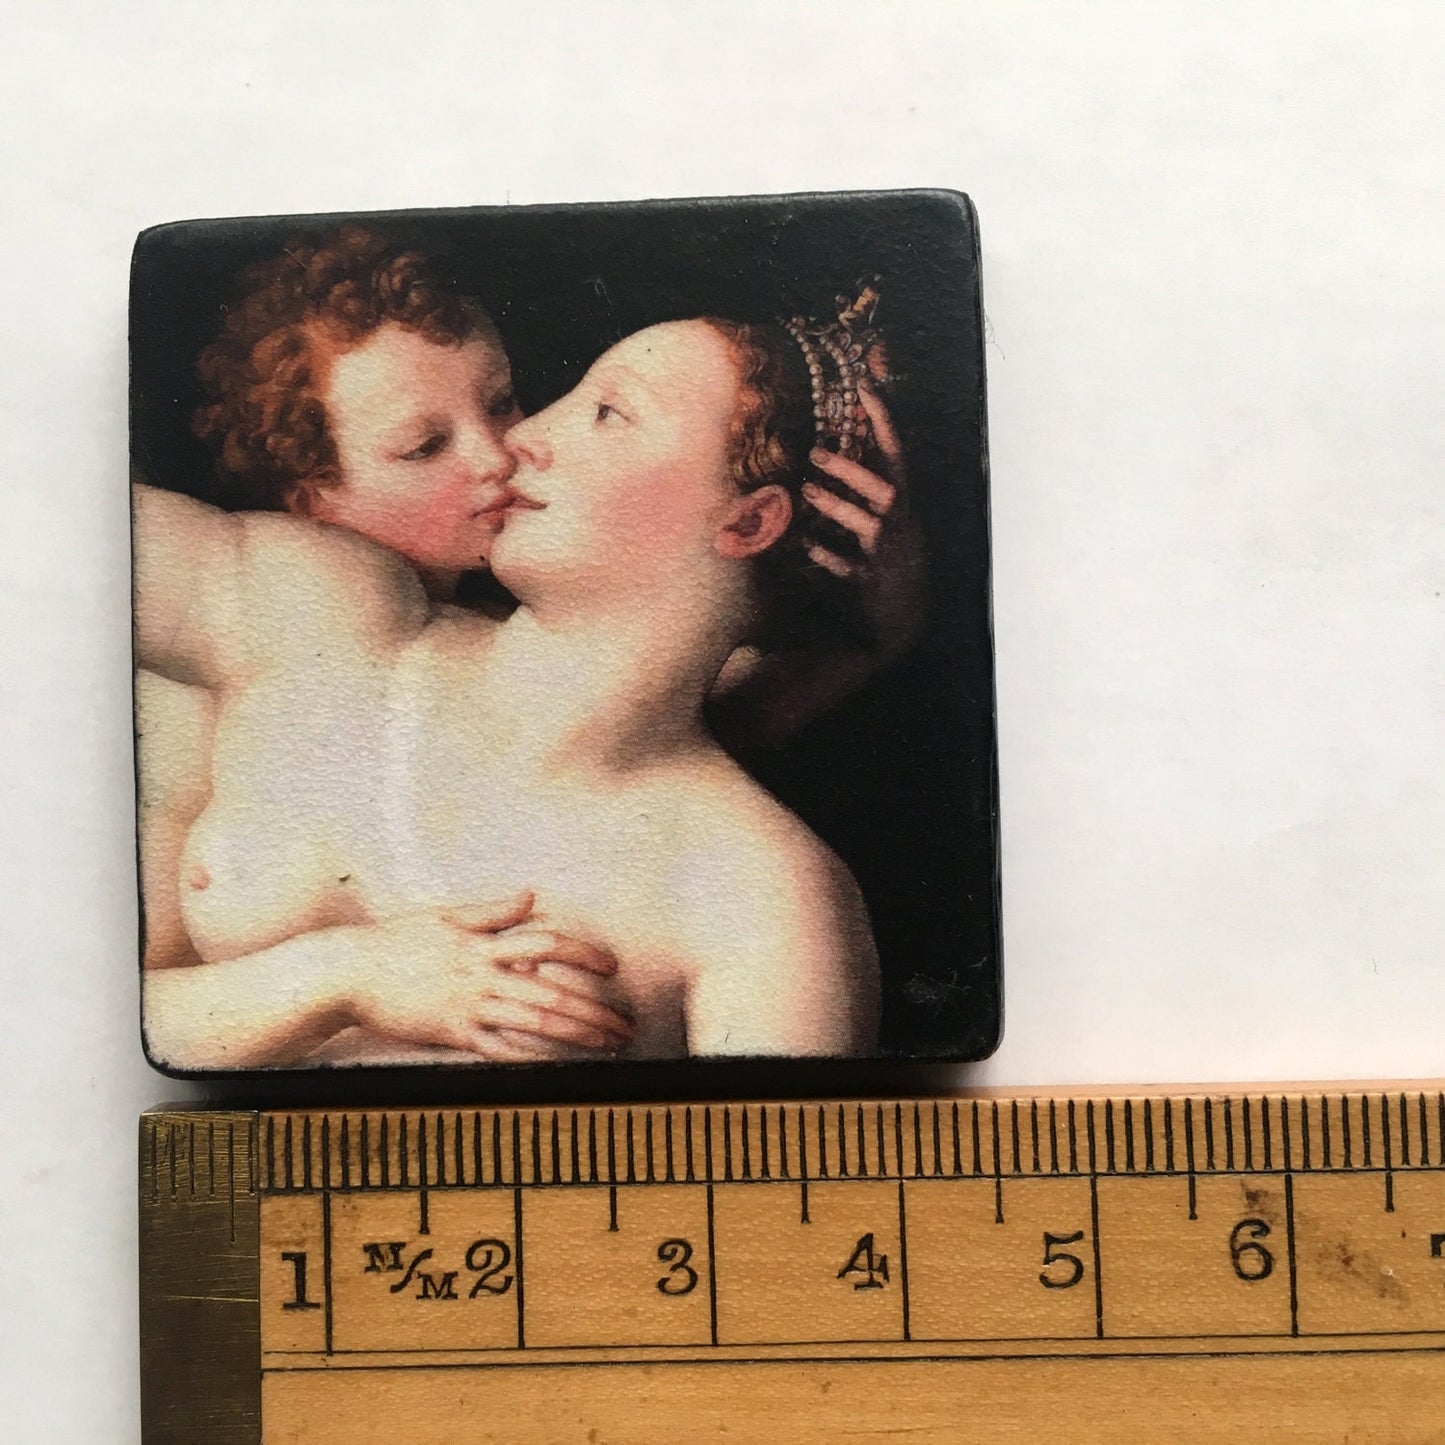 Nude  Art Renaissance pin brooch.